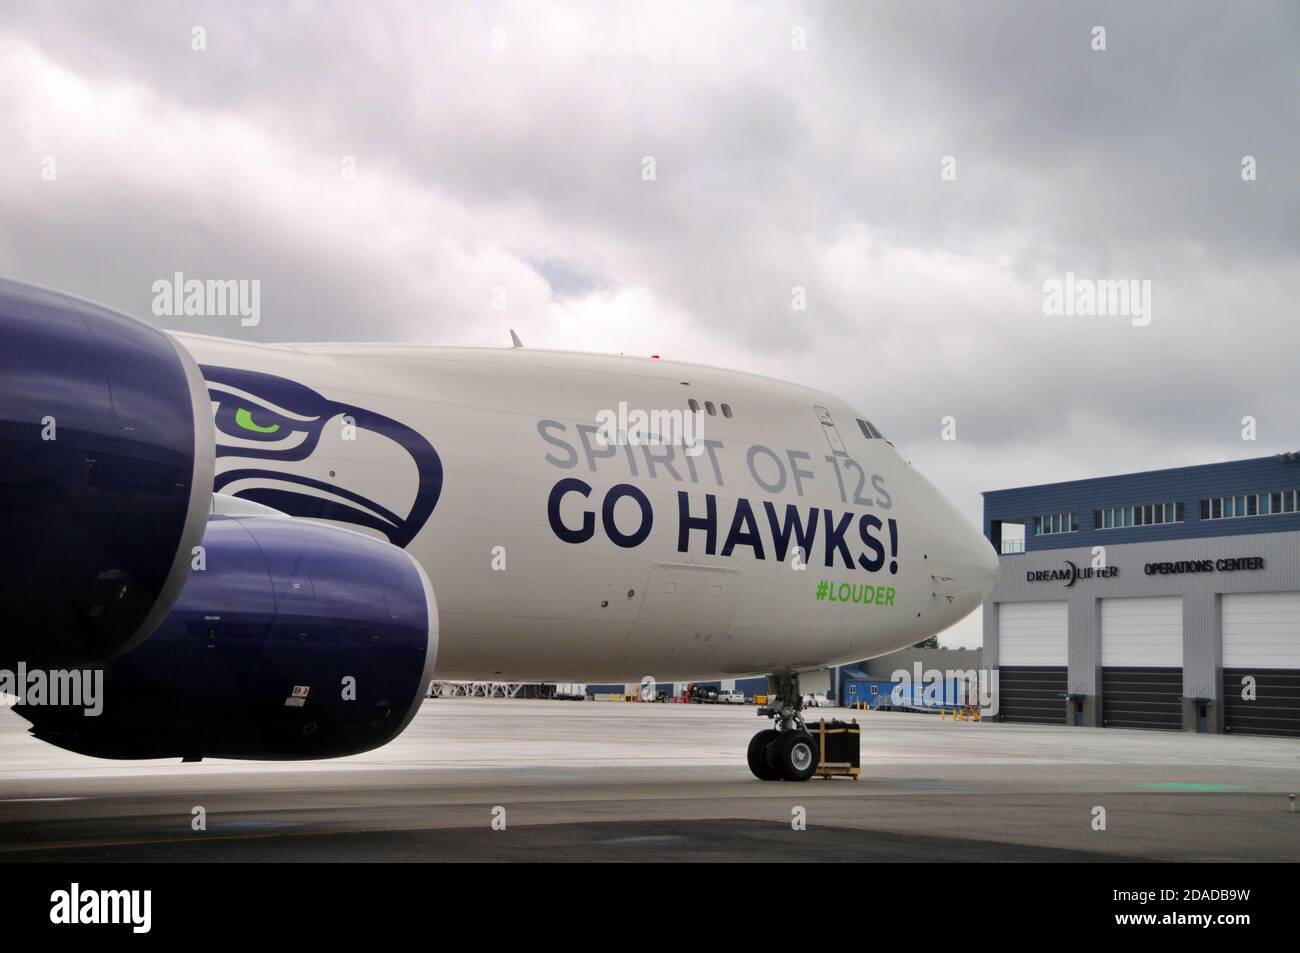 L'équipe de football de Seahawks se trouve sur le parking Boeing 747-8 Freighter devant le bâtiment du centre des opérations de Dreamlipper à l'aéroport de Plainfield à Everett, en Australie occidentale Banque D'Images